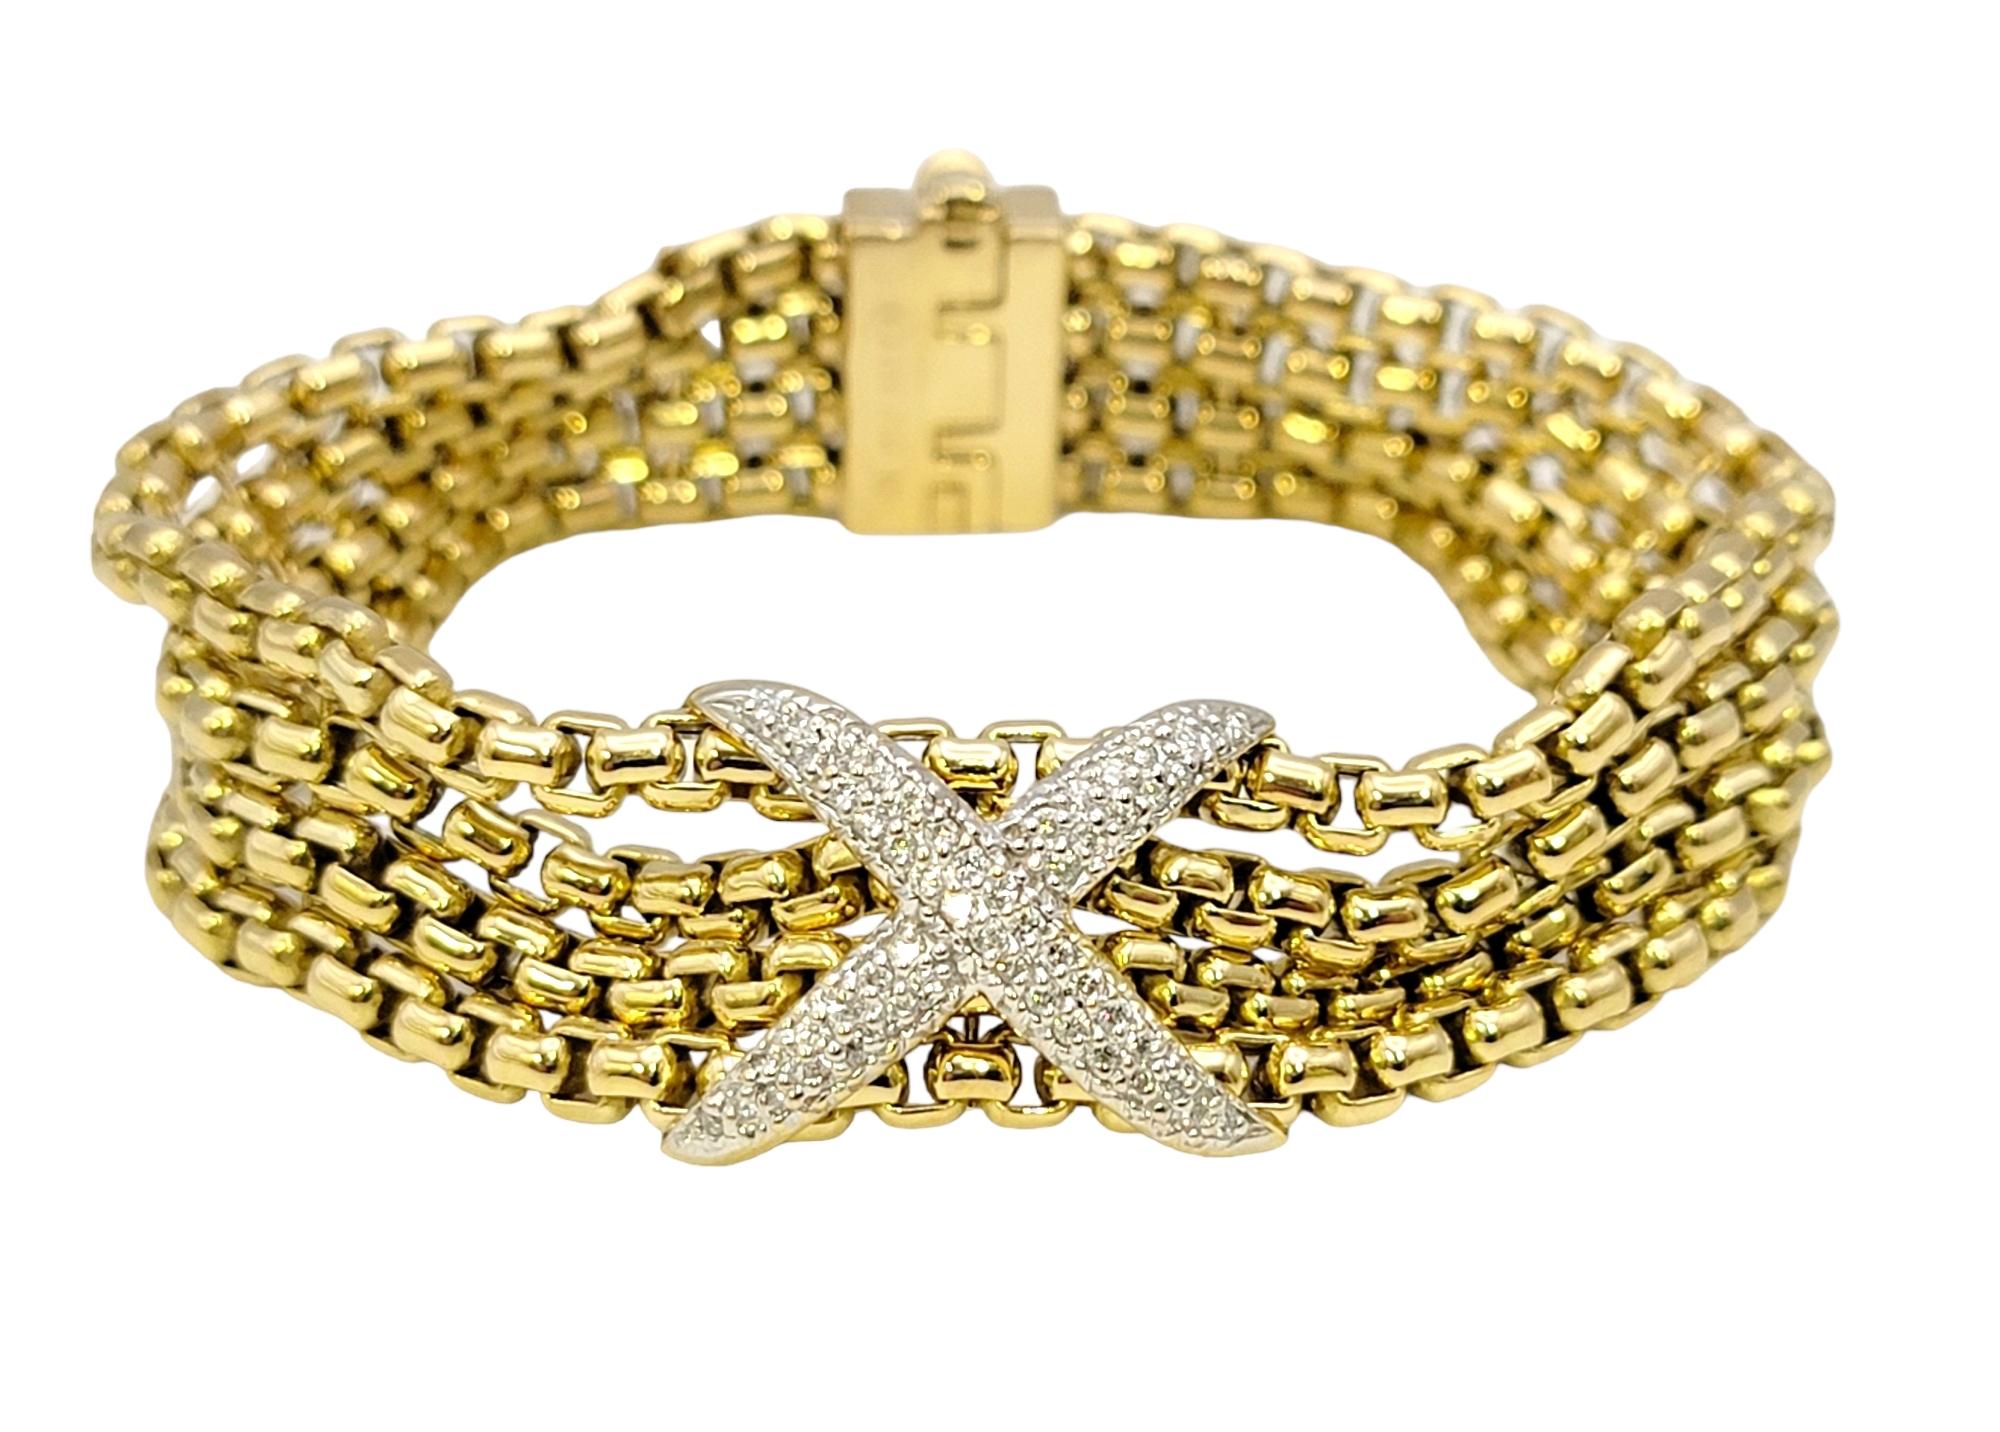 Ravissant bracelet multi-rangs en or et diamants du célèbre créateur de bijoux David Yurman. Fondée en 1980 par les artistes David et Sybil Yurman, l'entreprise est, selon leurs propres termes, 